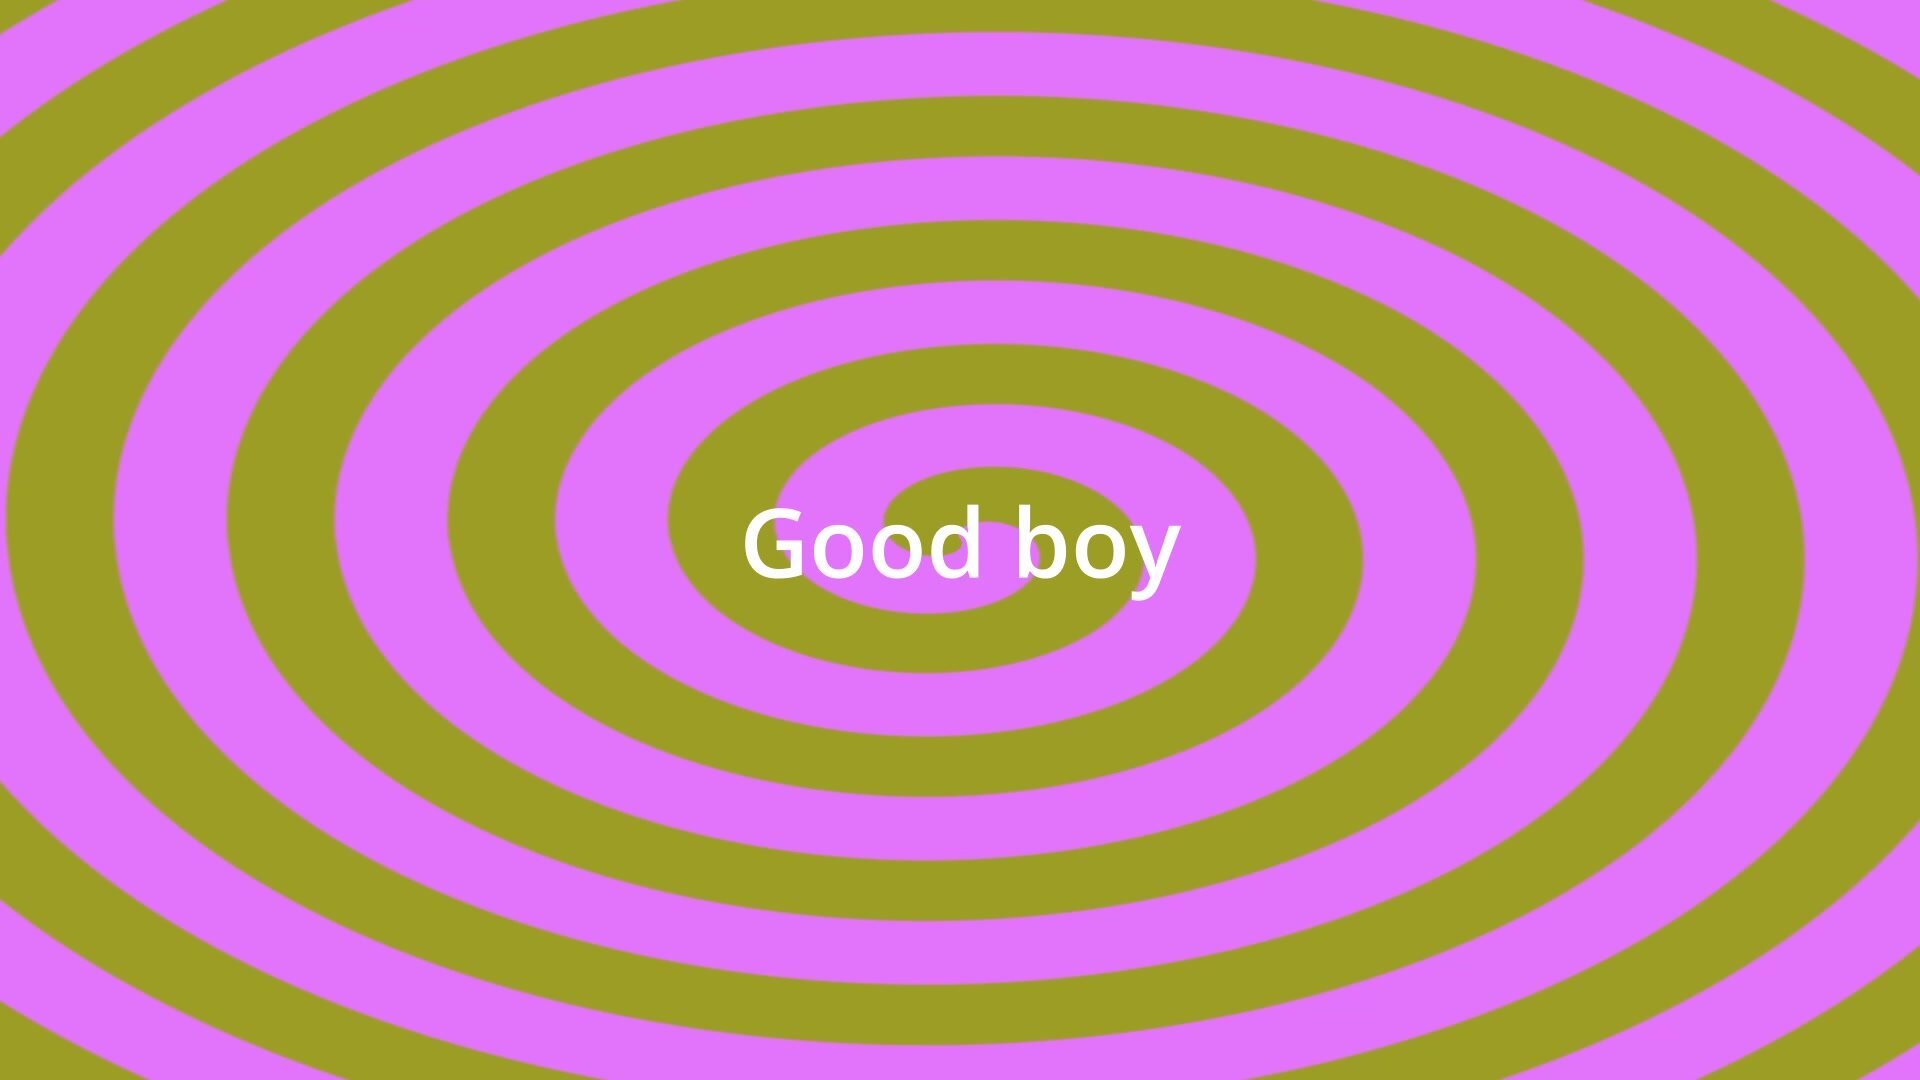 Good boy spiral